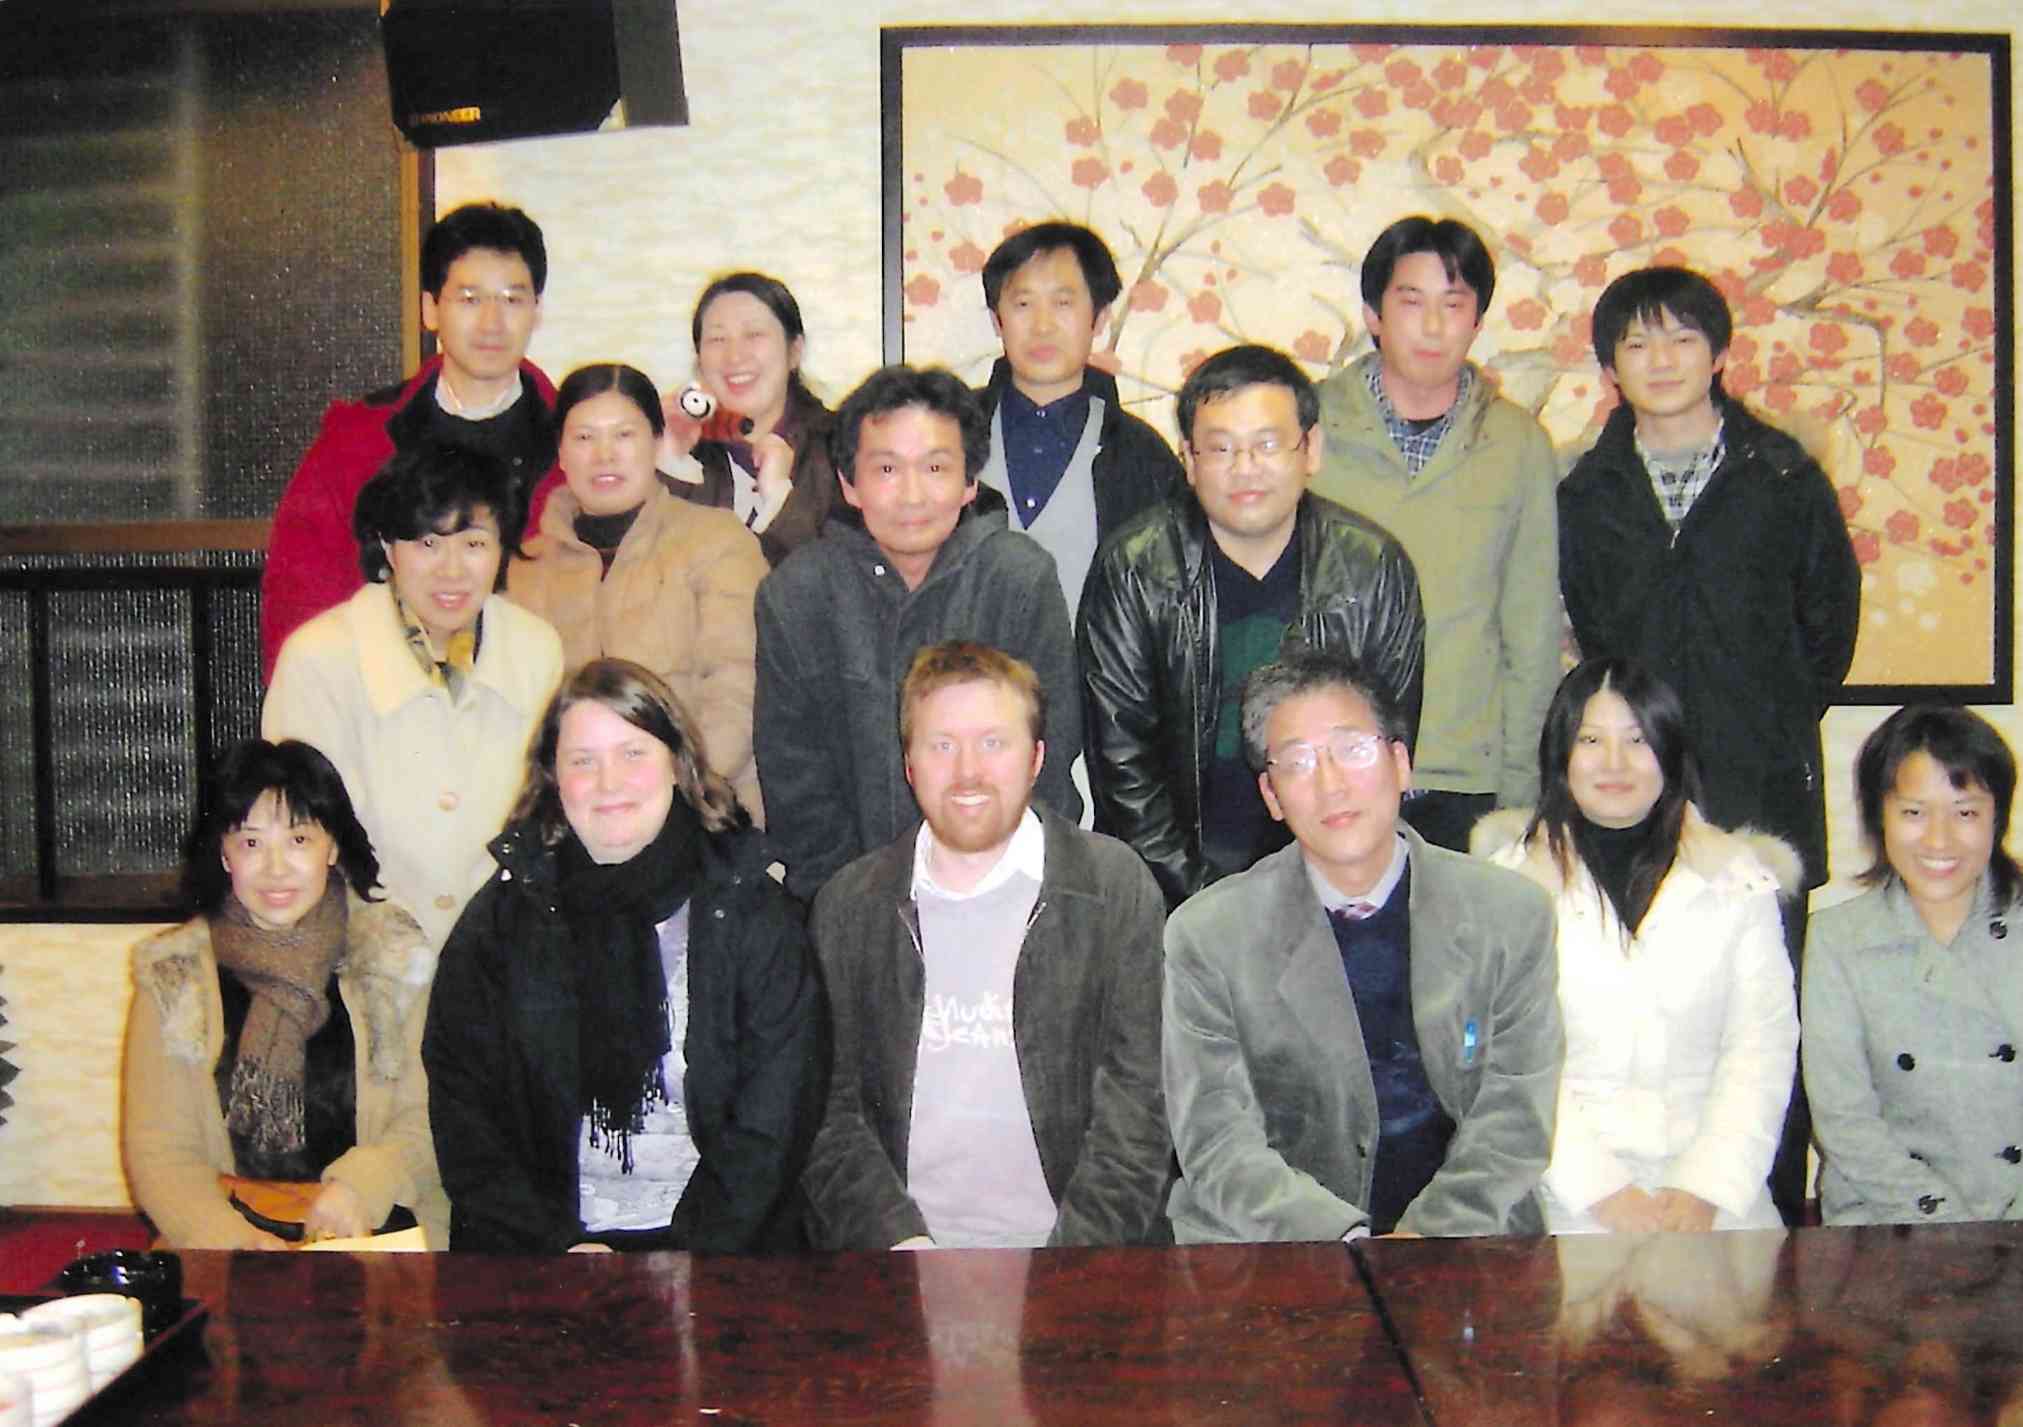 熊本大中央検査部当時の研究スタッフ。スウェーデン、中国、韓国からも参加し、多国籍で組織していた